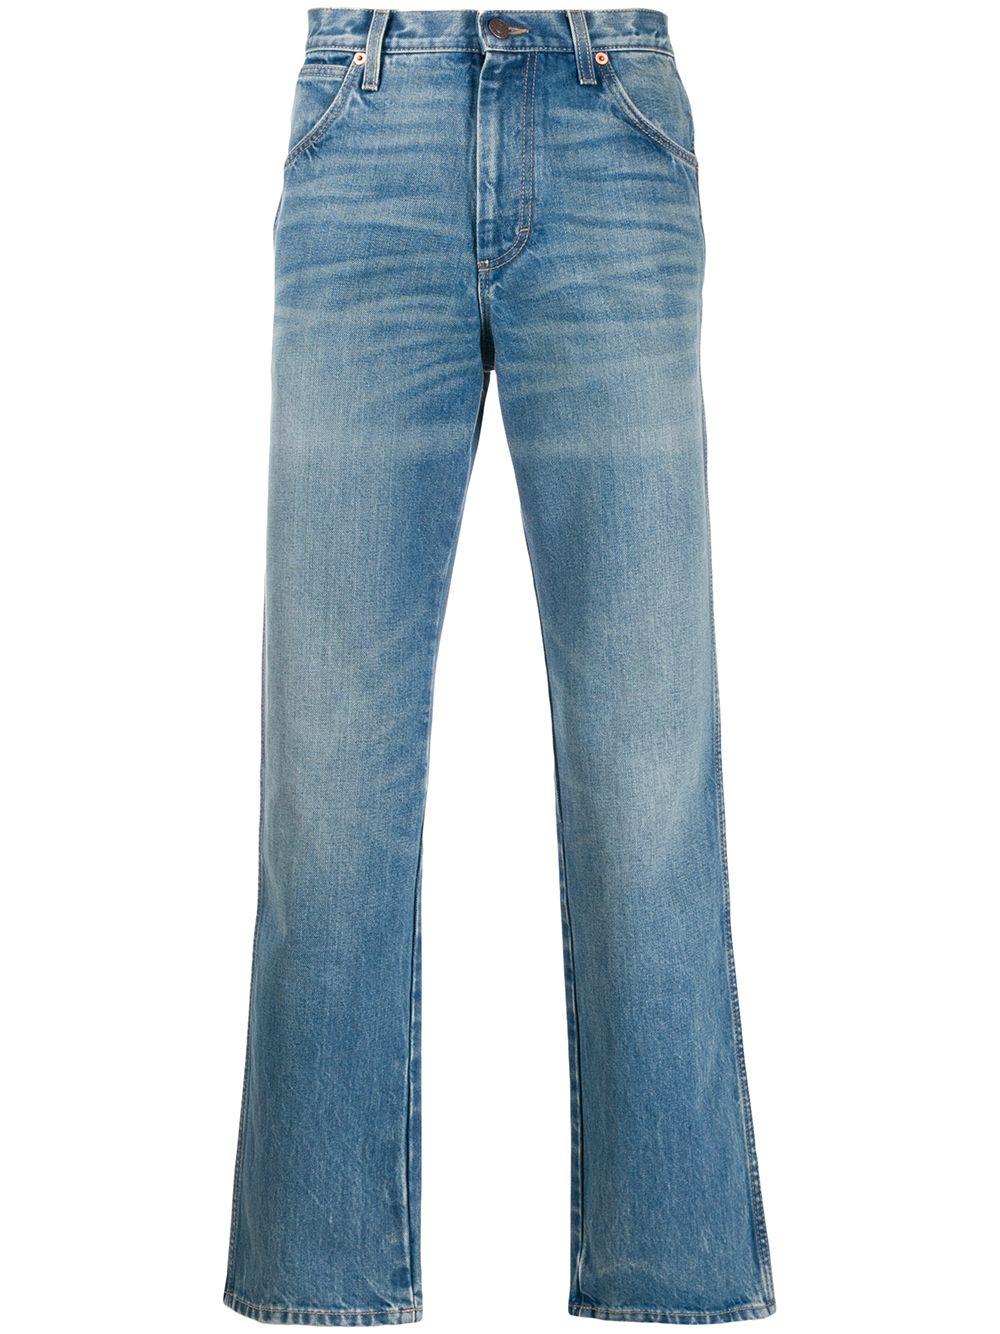 фото Gucci джинсы с эффектом потертости